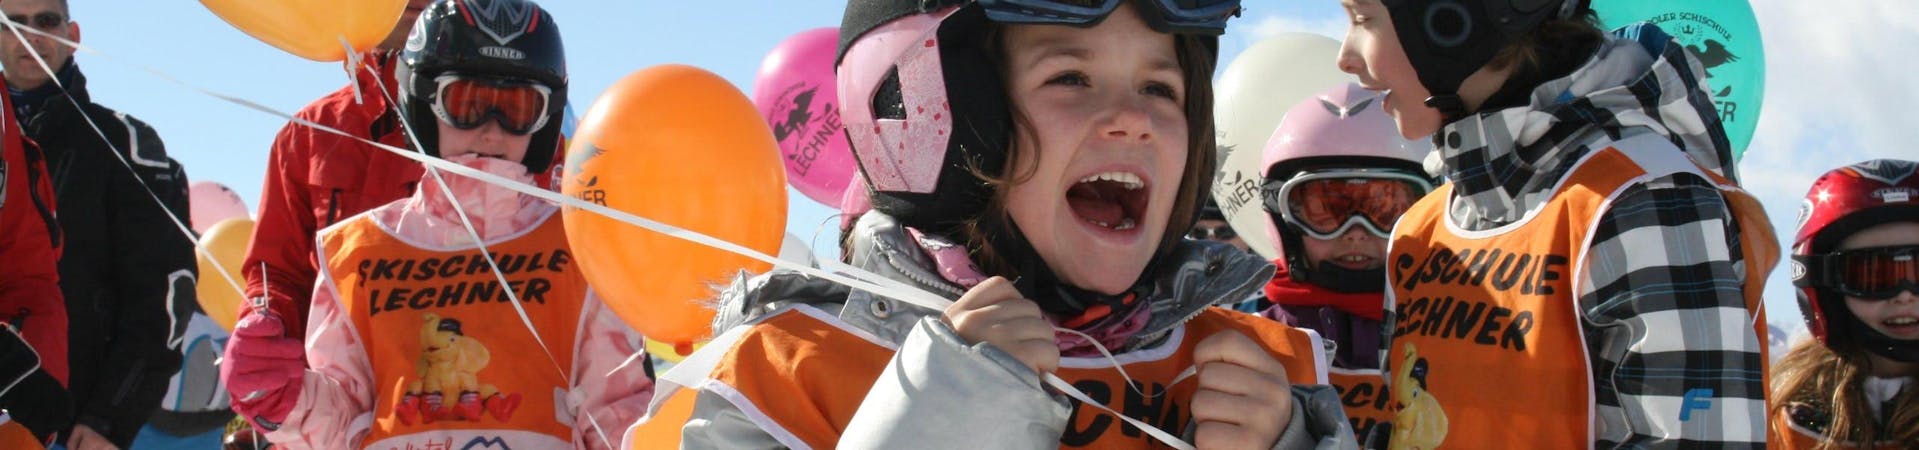 Verschillende kinderen die deelnemen aan de privé skilessen voor kinderen van alle leeftijden, georganiseerd door de skischool Skischule Lechner, houden ballonnen vast met het logo van de skischool erop gedrukt.